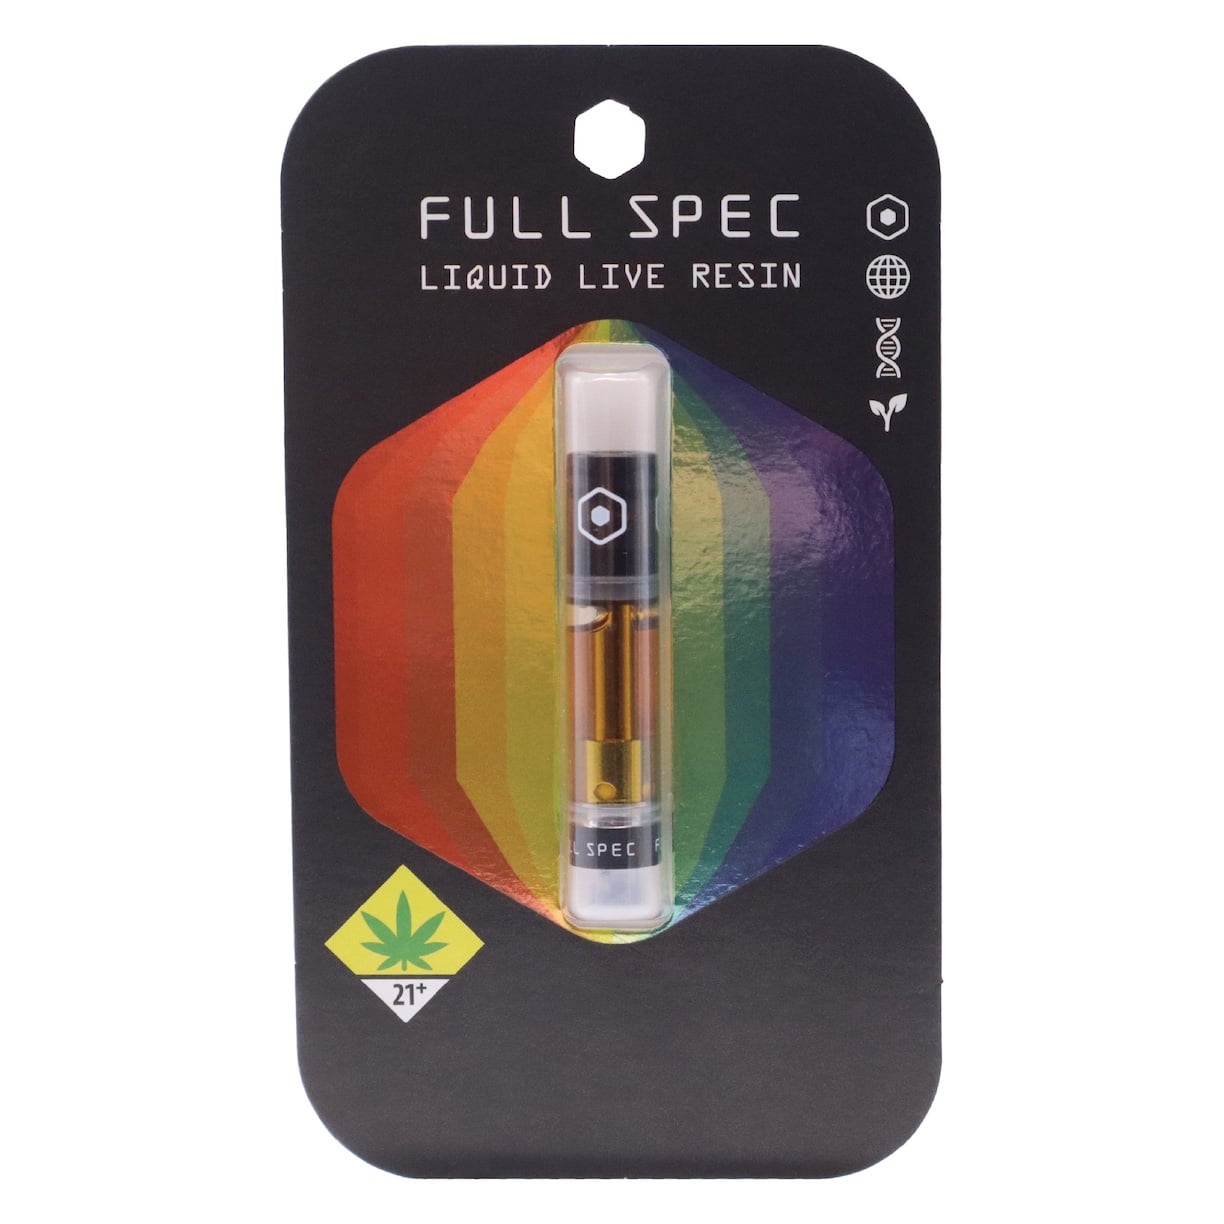 Full Spec Liquid Live Resin Full Spectrum Cannabis Vape Cartridge